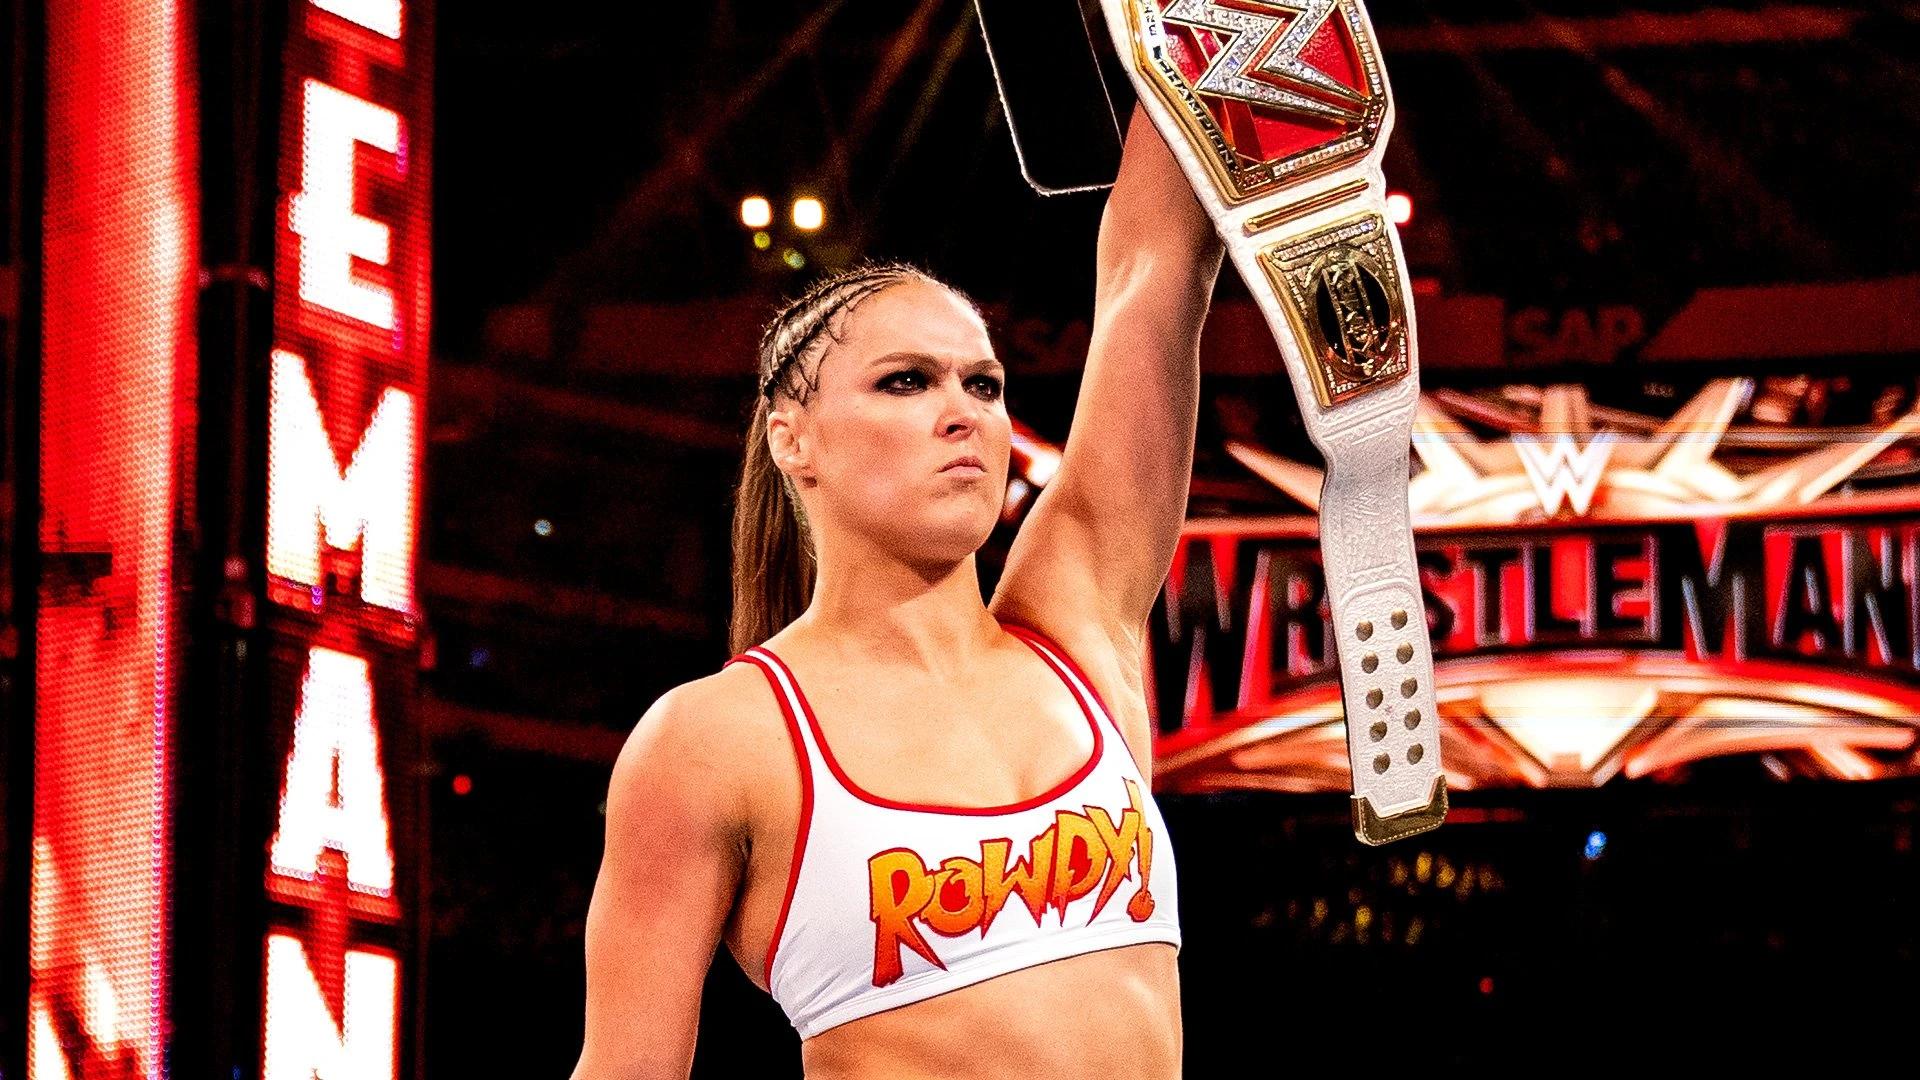 Ronda-Rousey-674e.webp.jpg